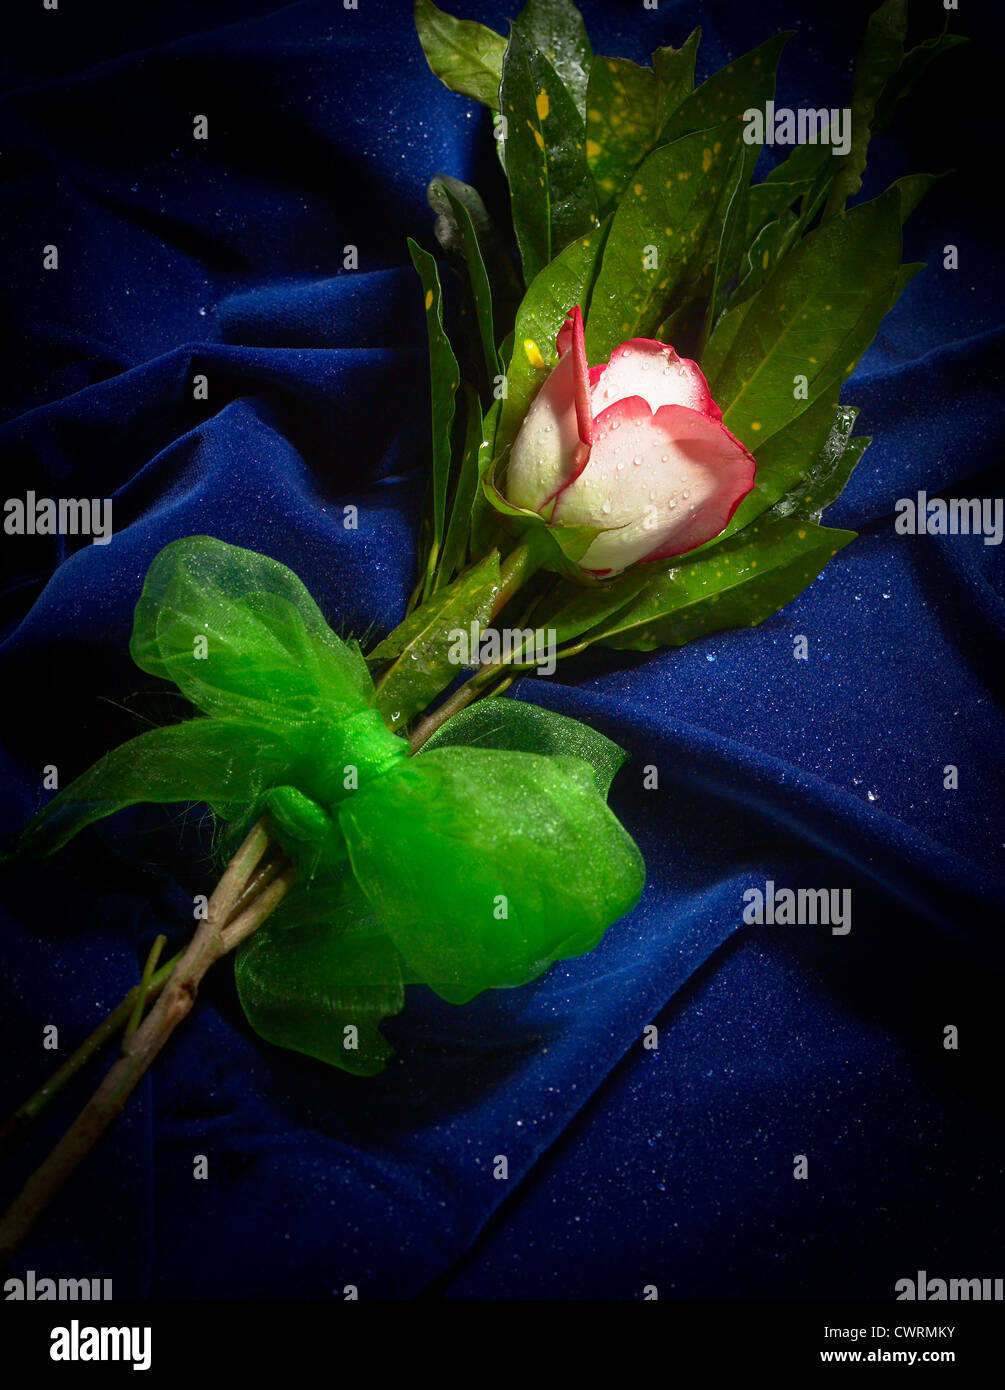 White & Red Rose Flower On Blue Velvet Fabric Stock Photo - Alamy